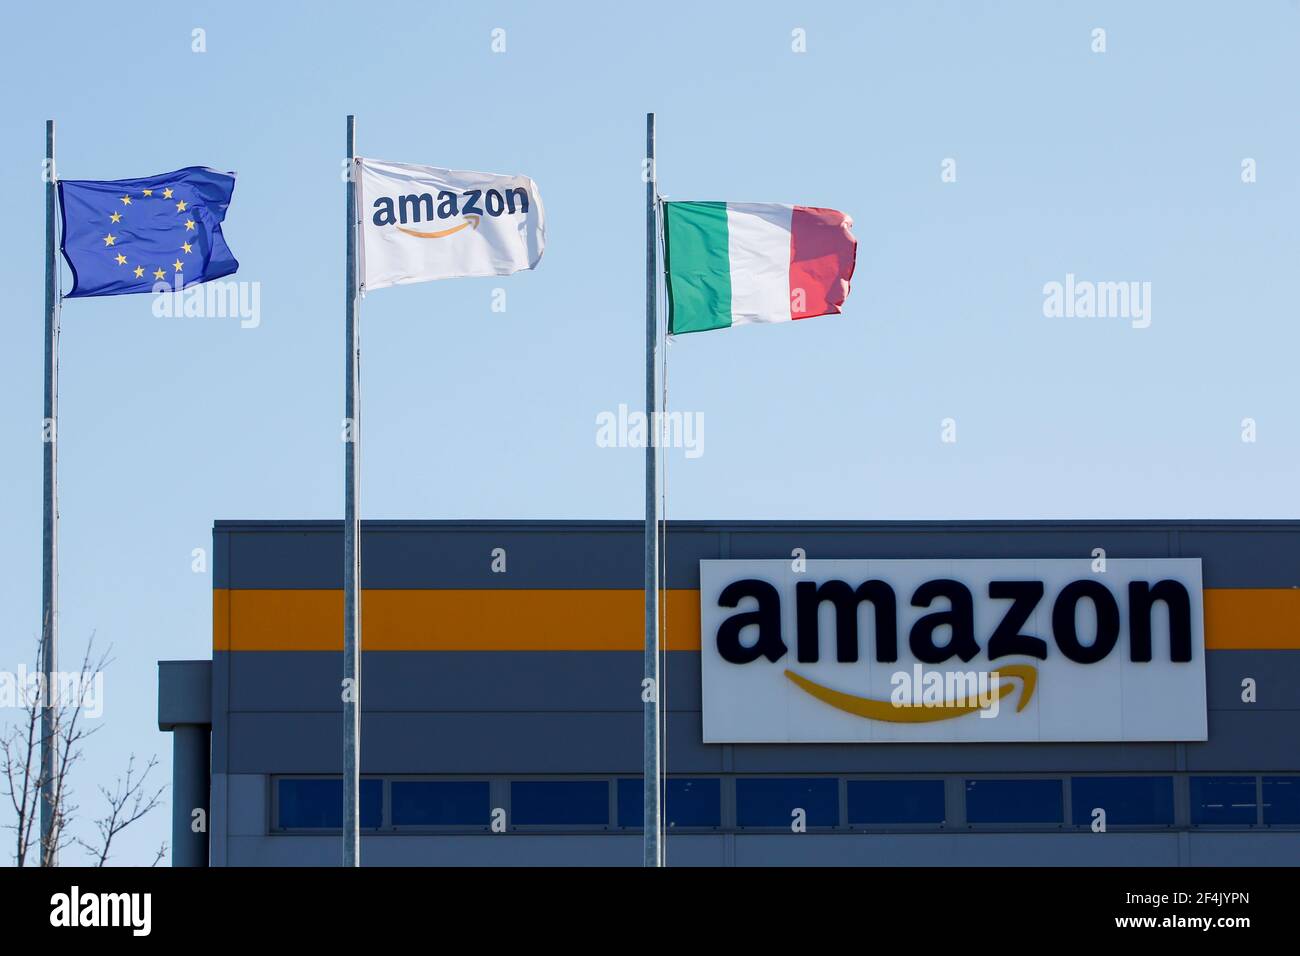 Flaggen flattern vor einem Distributionszentrum, während eines Streiks bei  Amazon Logistik in Italien, Passo Corese, Italien 22. März 2021.  REUTERS/Remo Casilli Stockfotografie - Alamy